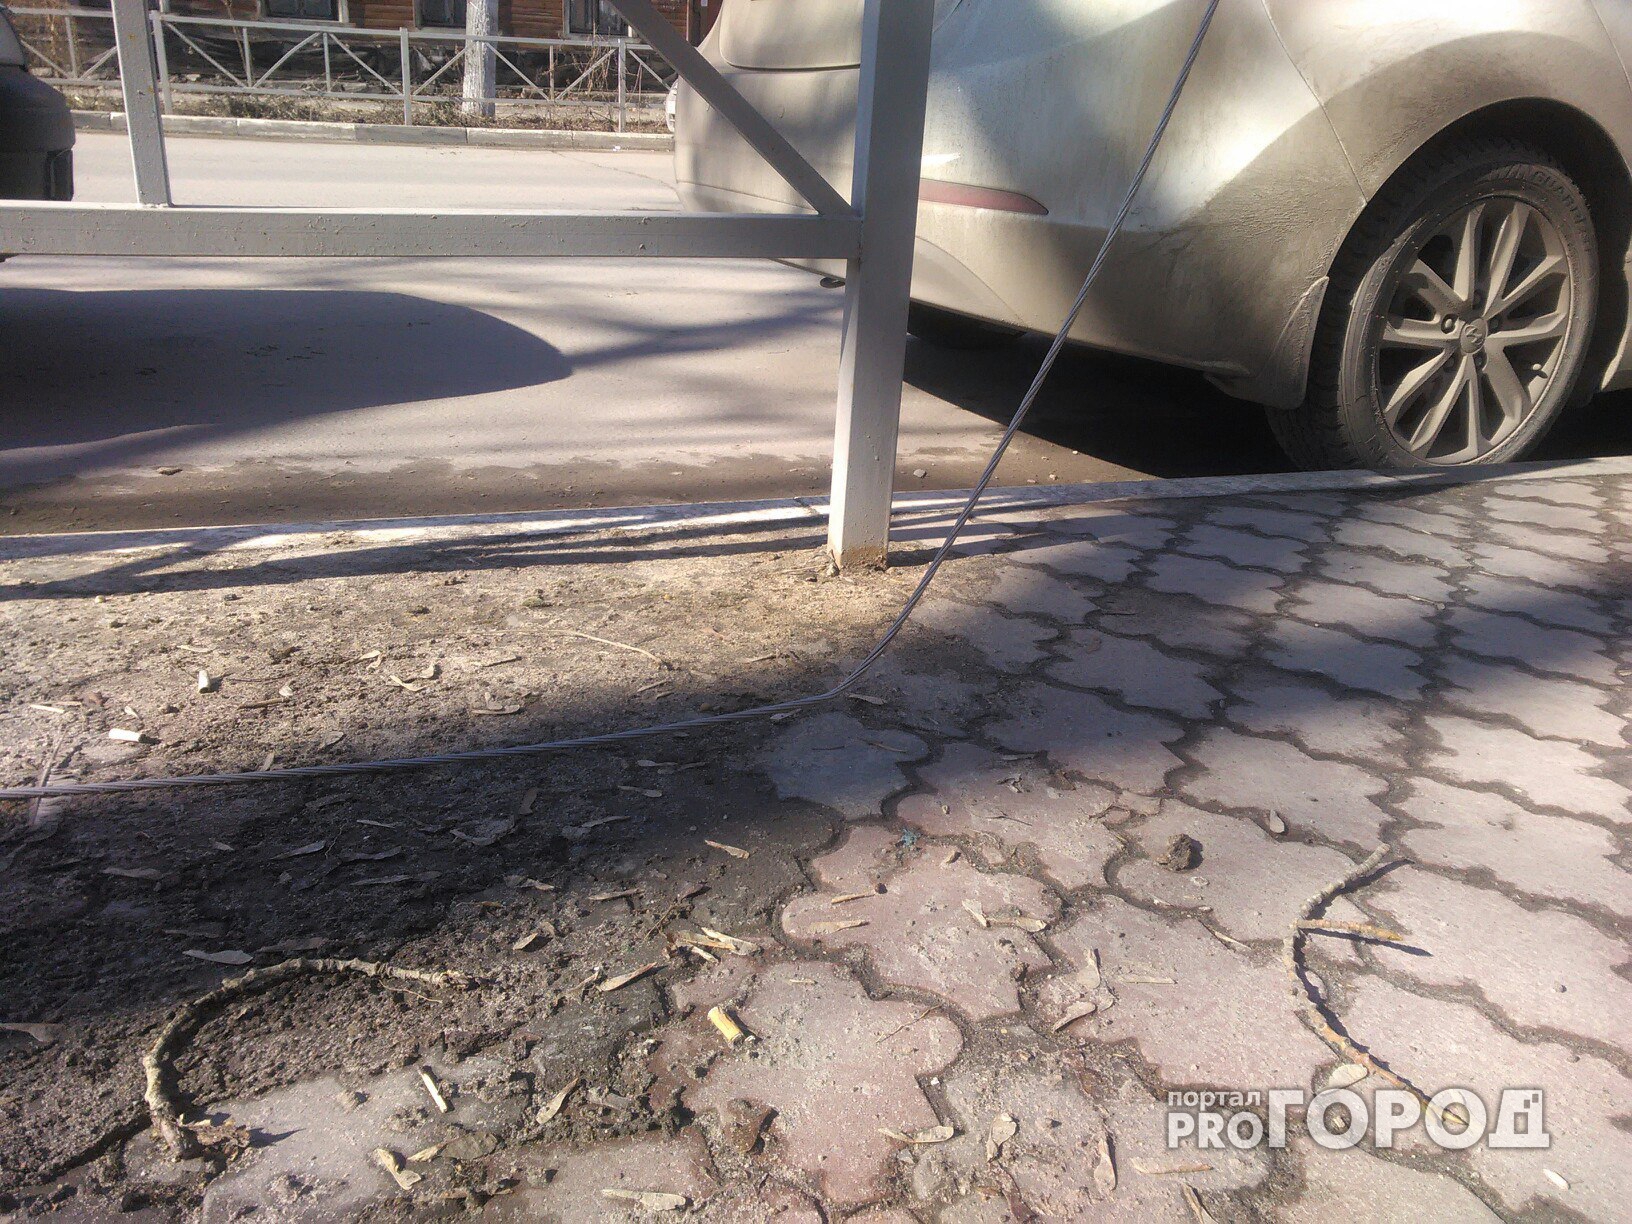 Жалоба от читателя: оголенный провод на улице в самом центре Рязани